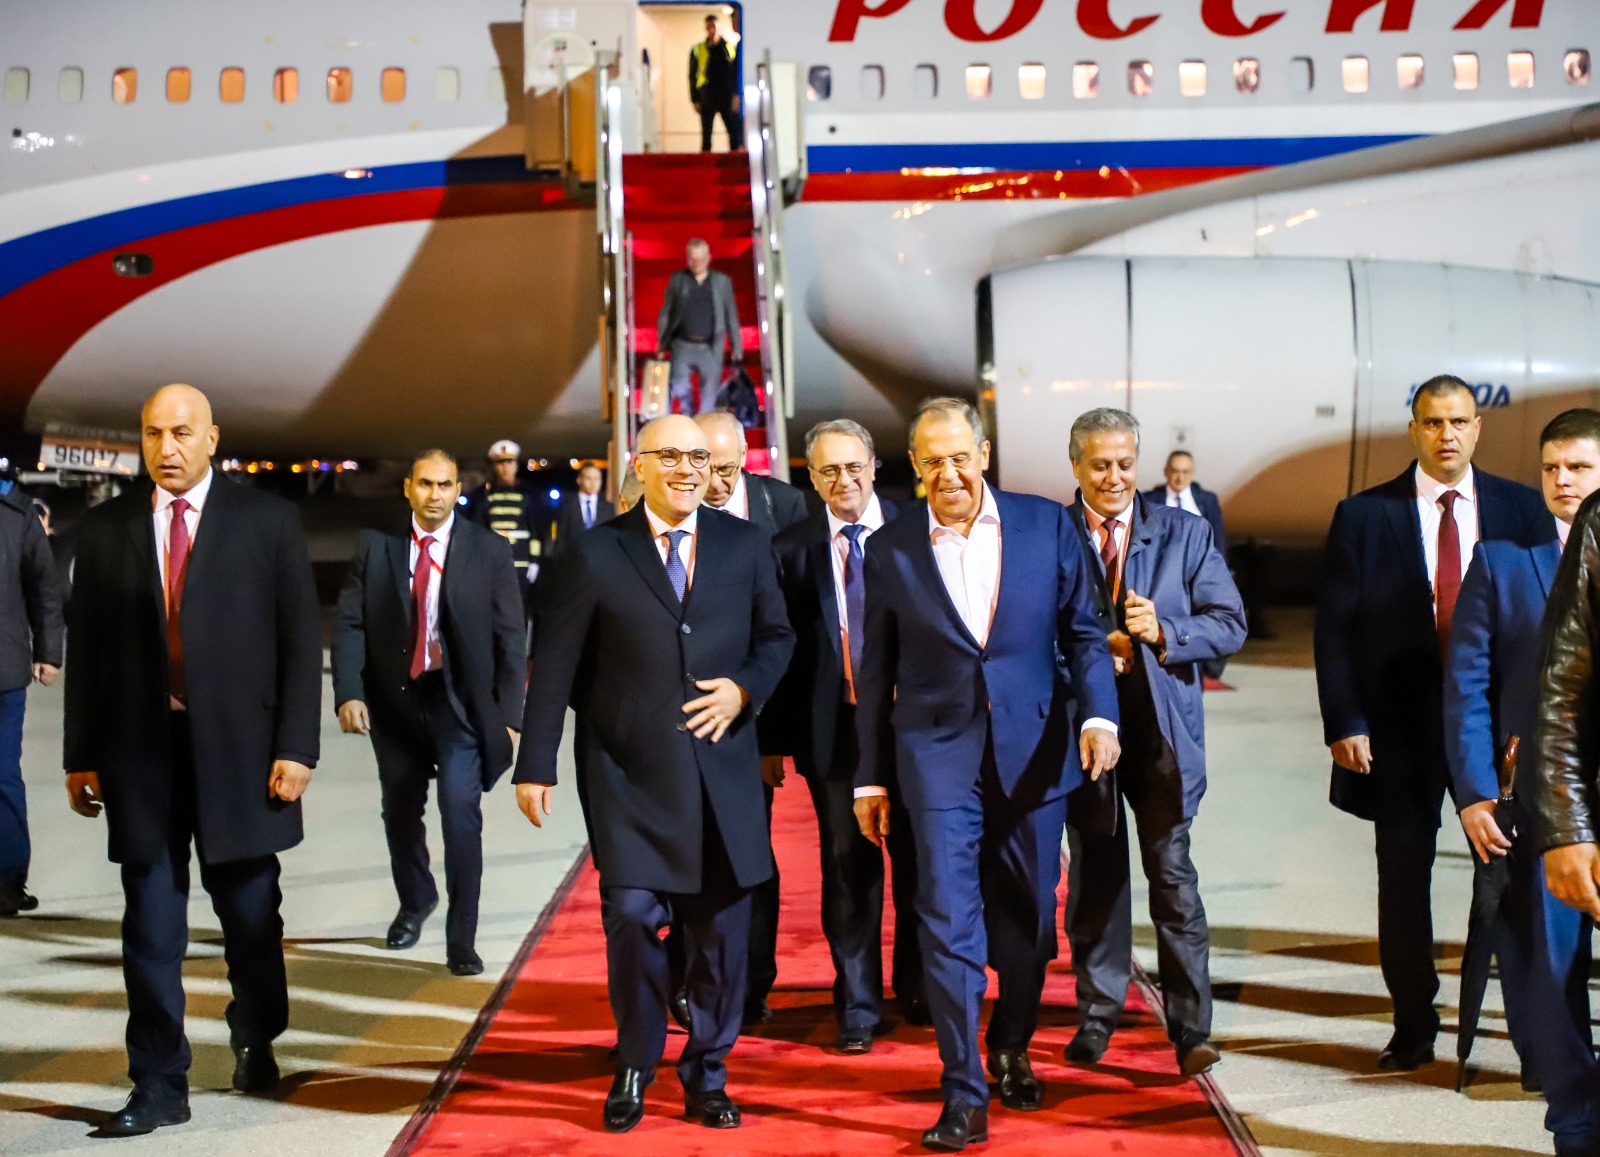 Arrivée du ministre des affaires étrangères Russe Sergei Lavrov en Tunisie